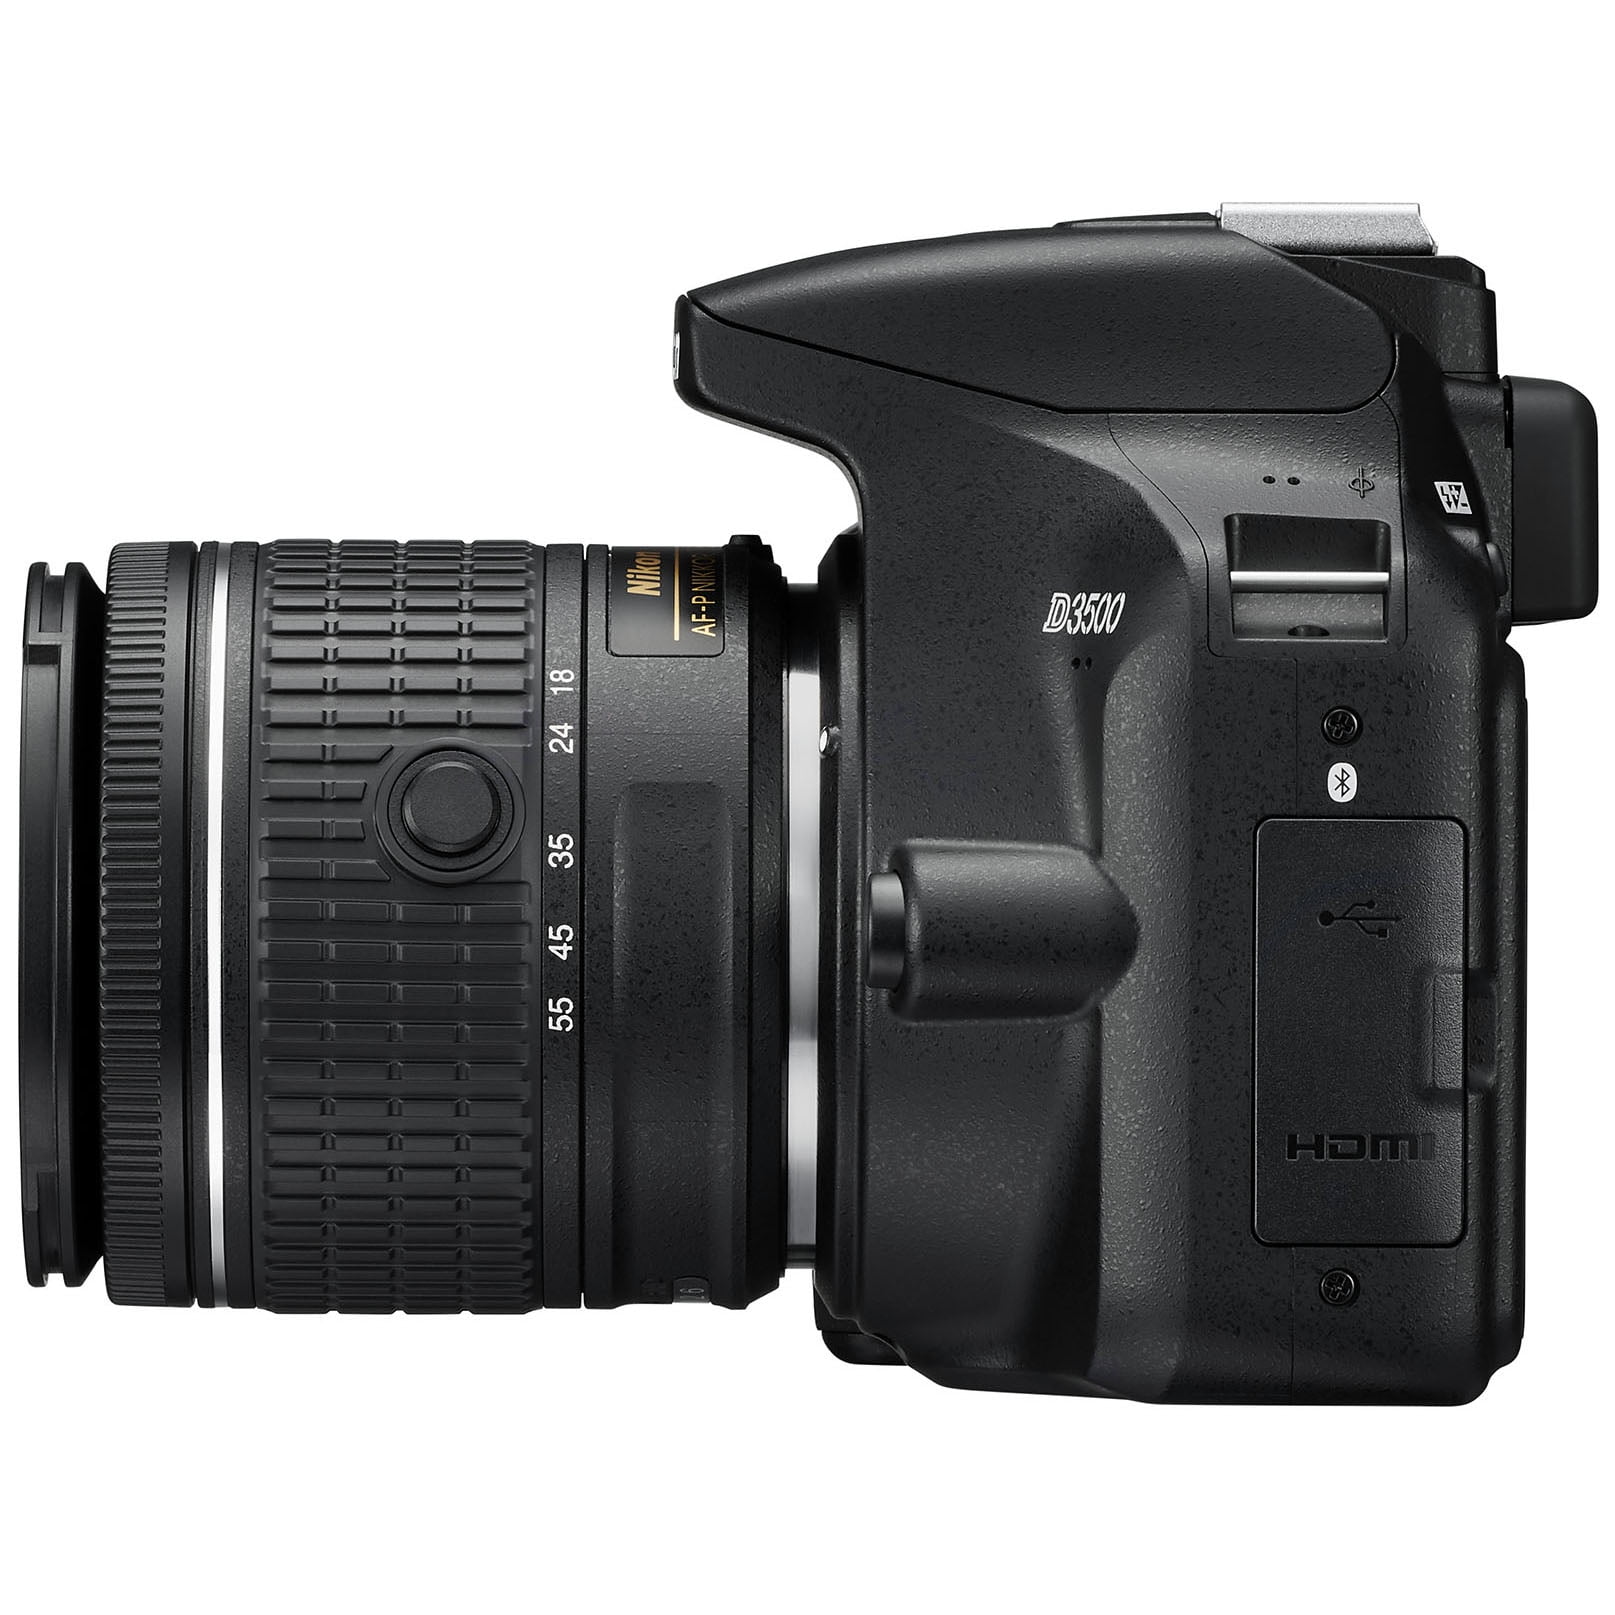 Nikon D3500 W/ AF-P DX Nikkor 18-55mm f/3.5-5.6G VR Black